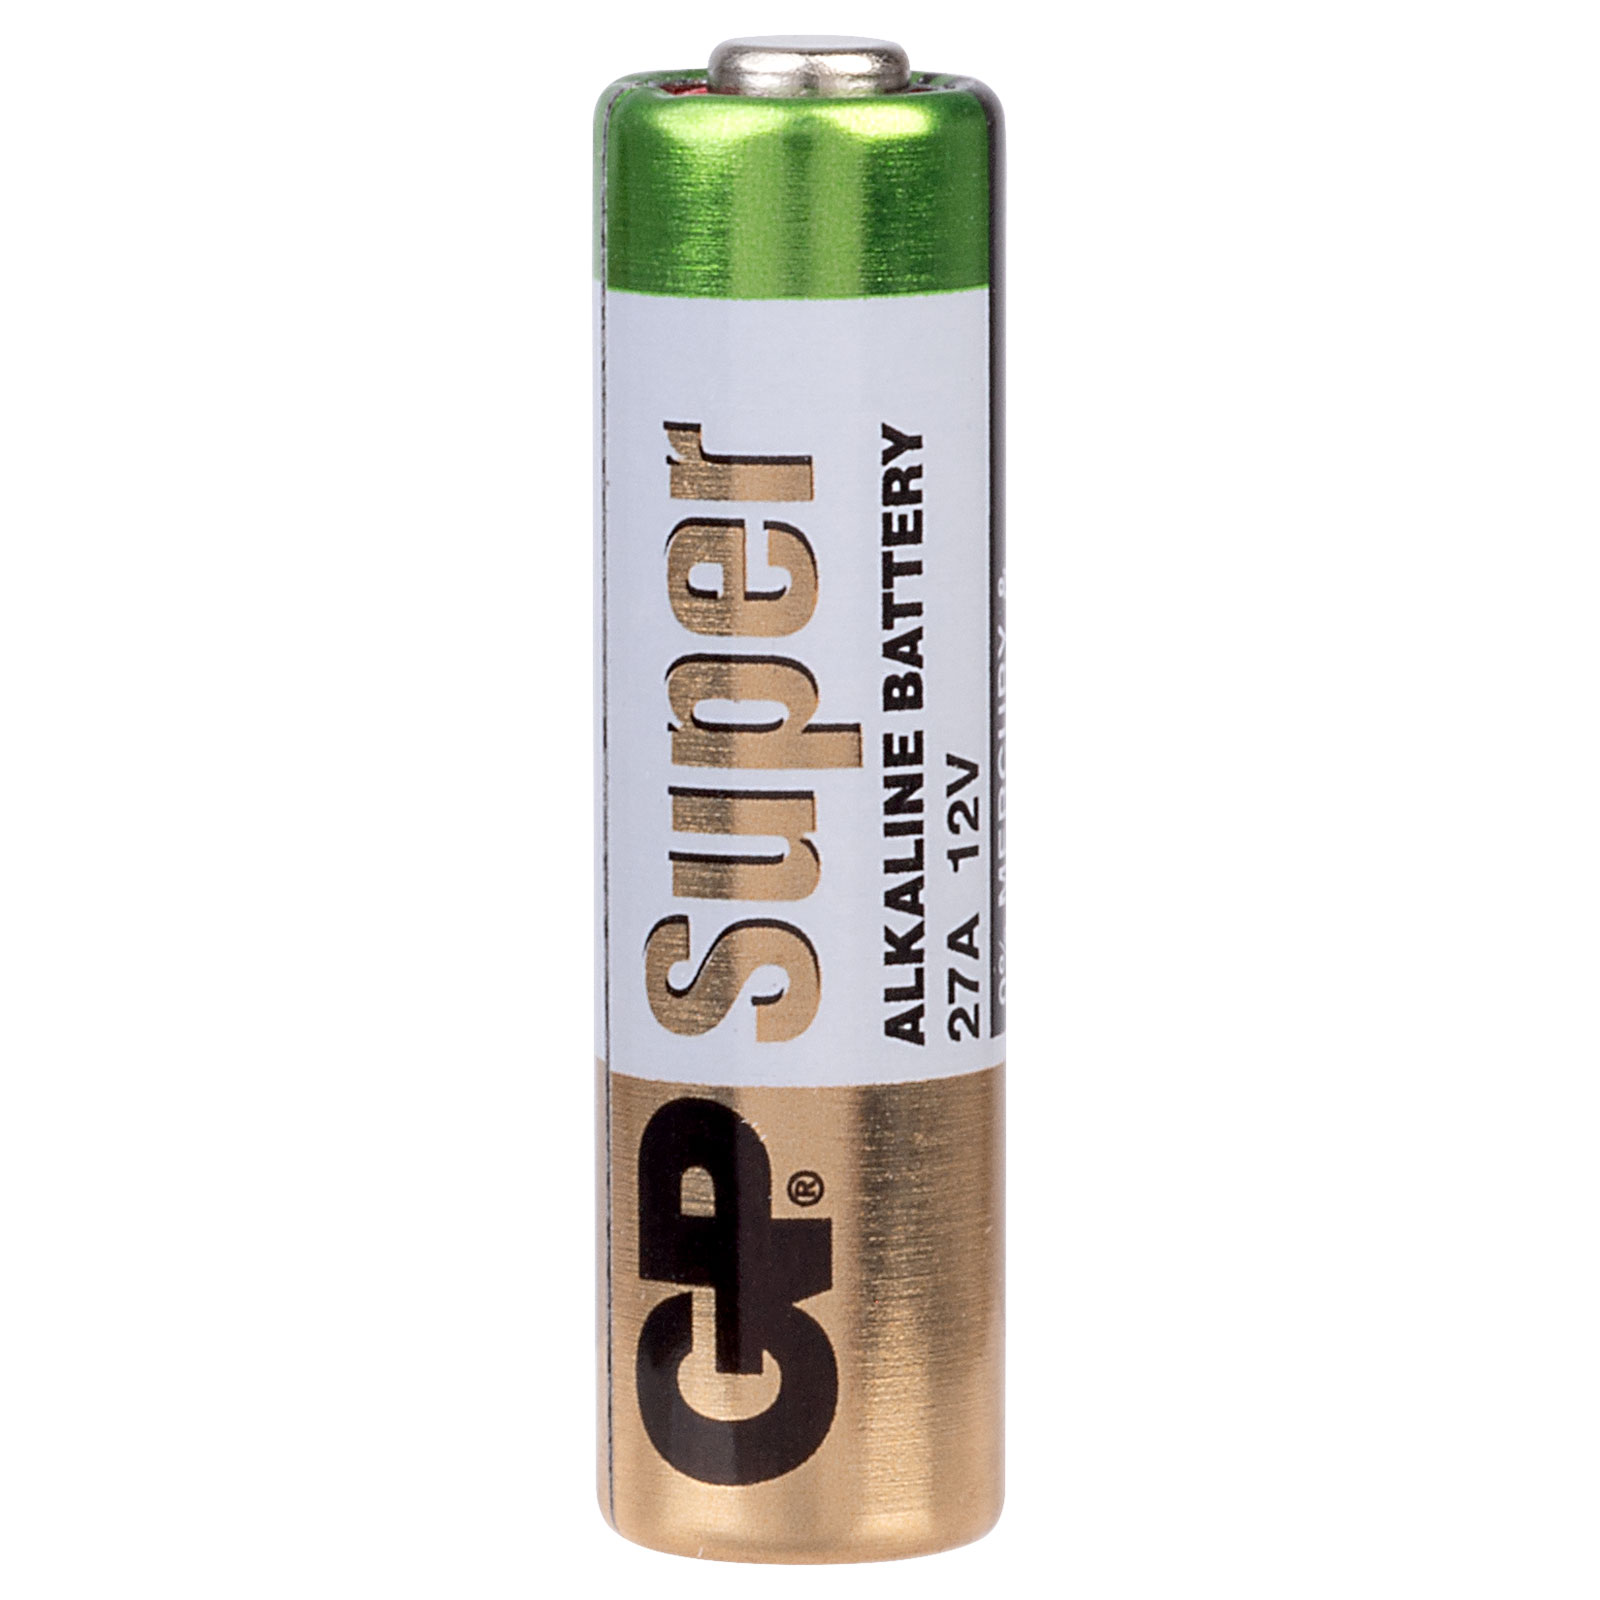 GP 27A: Alkaline Batterie, 27 A, 1er-Pack bei reichelt elektronik